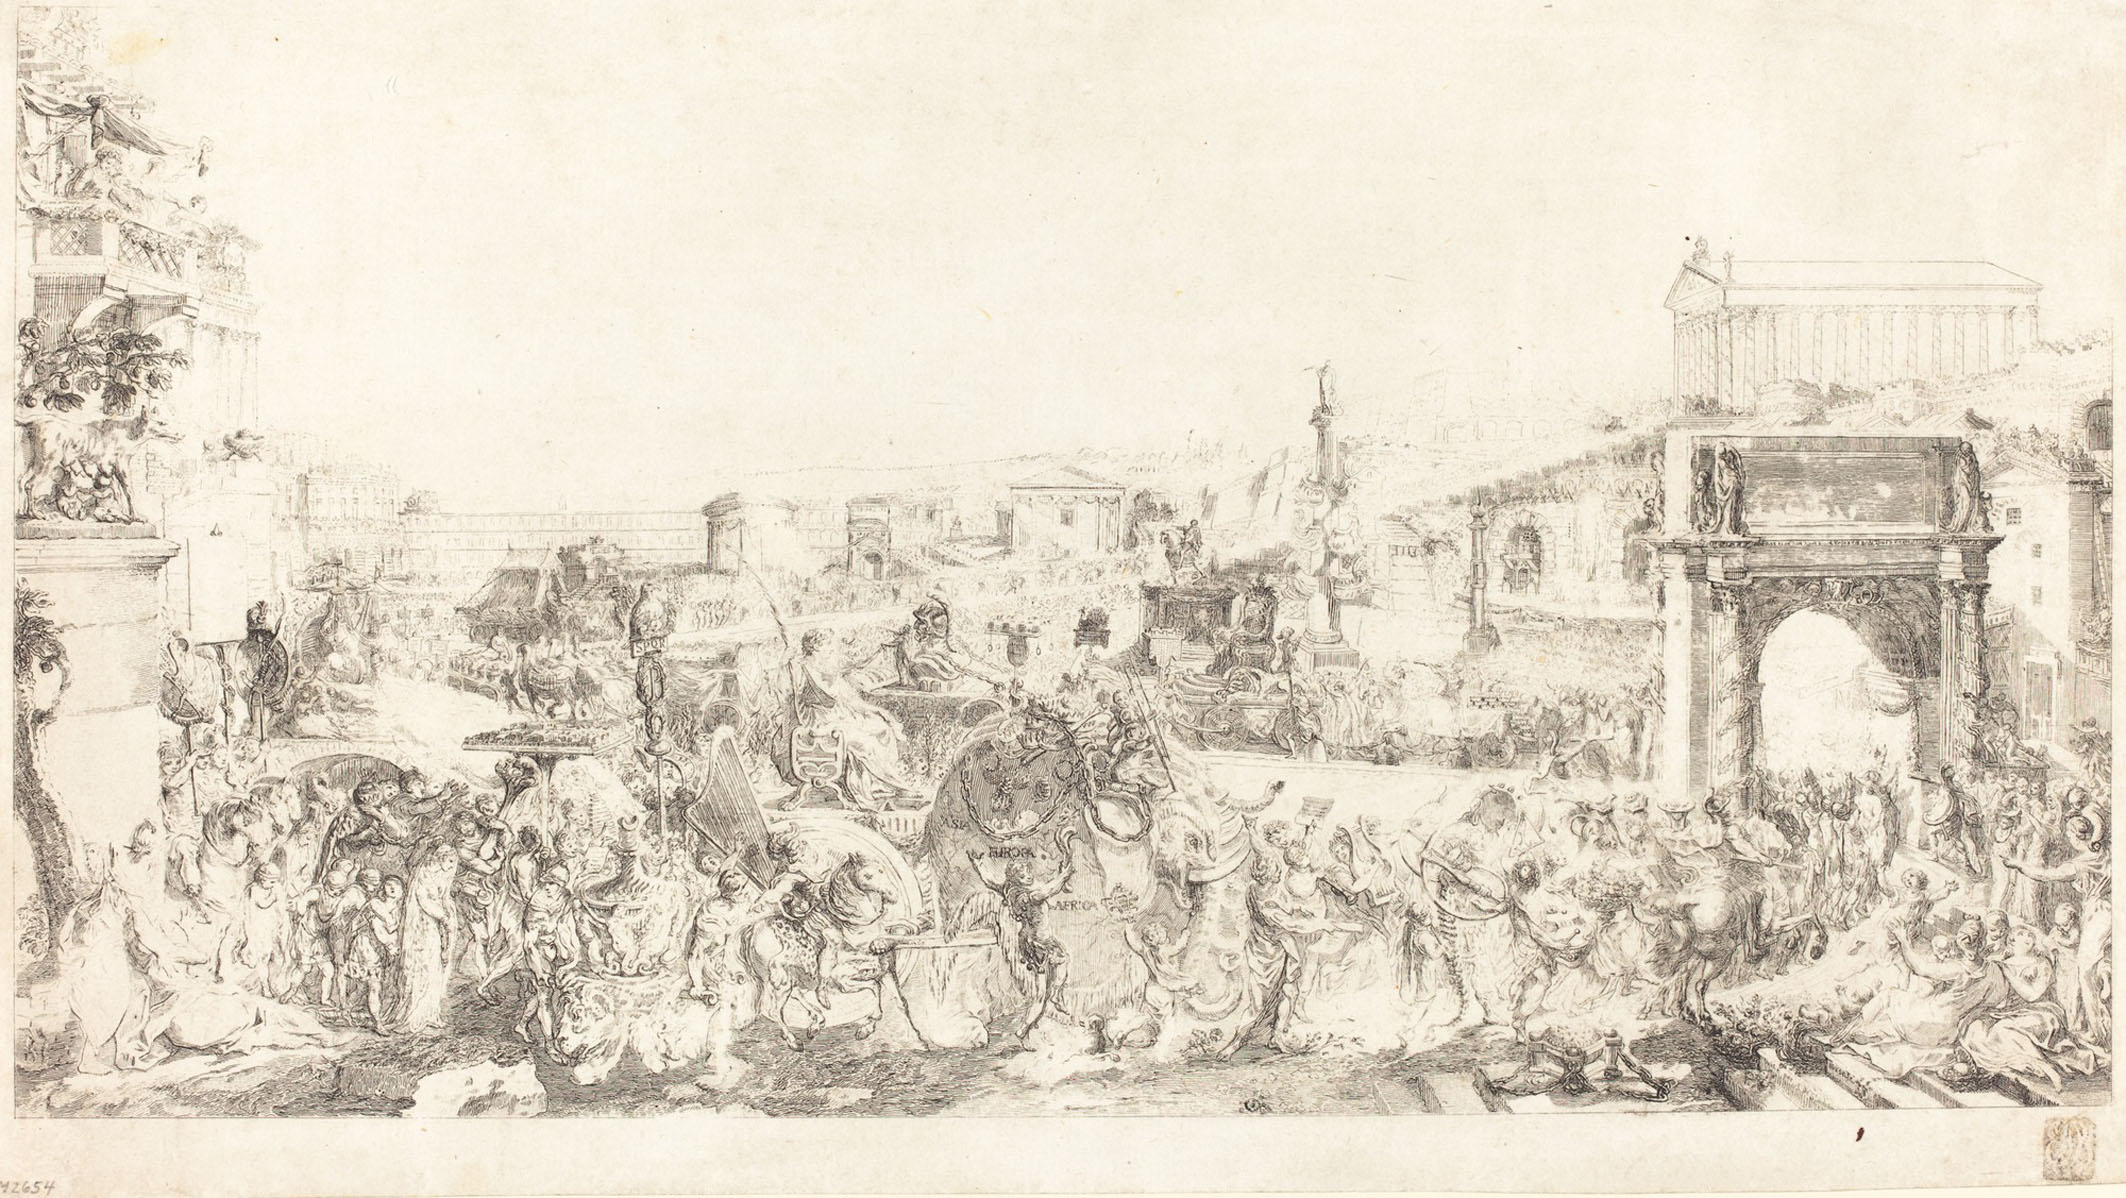 Gabriel Jacques de Saint-Aubin (French, 1724 - 1780 ), Triomphe de Pompee dans Rome, 1775, etching [proof], Rosenwald Collection